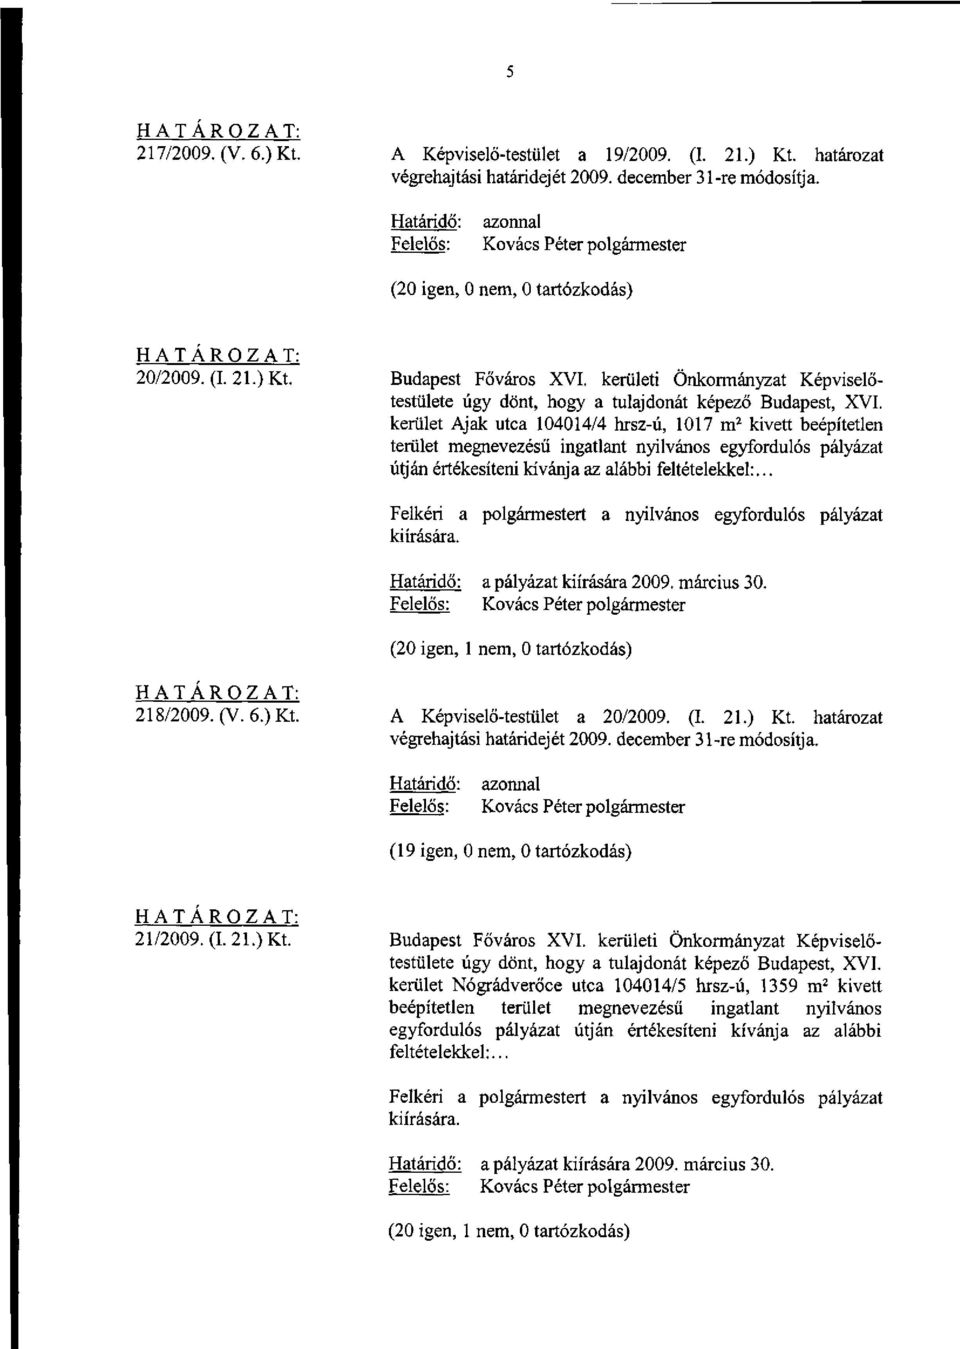 alábbi feltételekkel:... a pályázat kiírására 2009. március 30. 218/2009. (V. 6.) Kt. A Képviselő-testület a 20/2009. (I. 21.) Kt. határozat (19 igen, 0 nem, 0 tartózkodás) 21/2009. (1.21.) Kt. Budapest Főváros XVI.